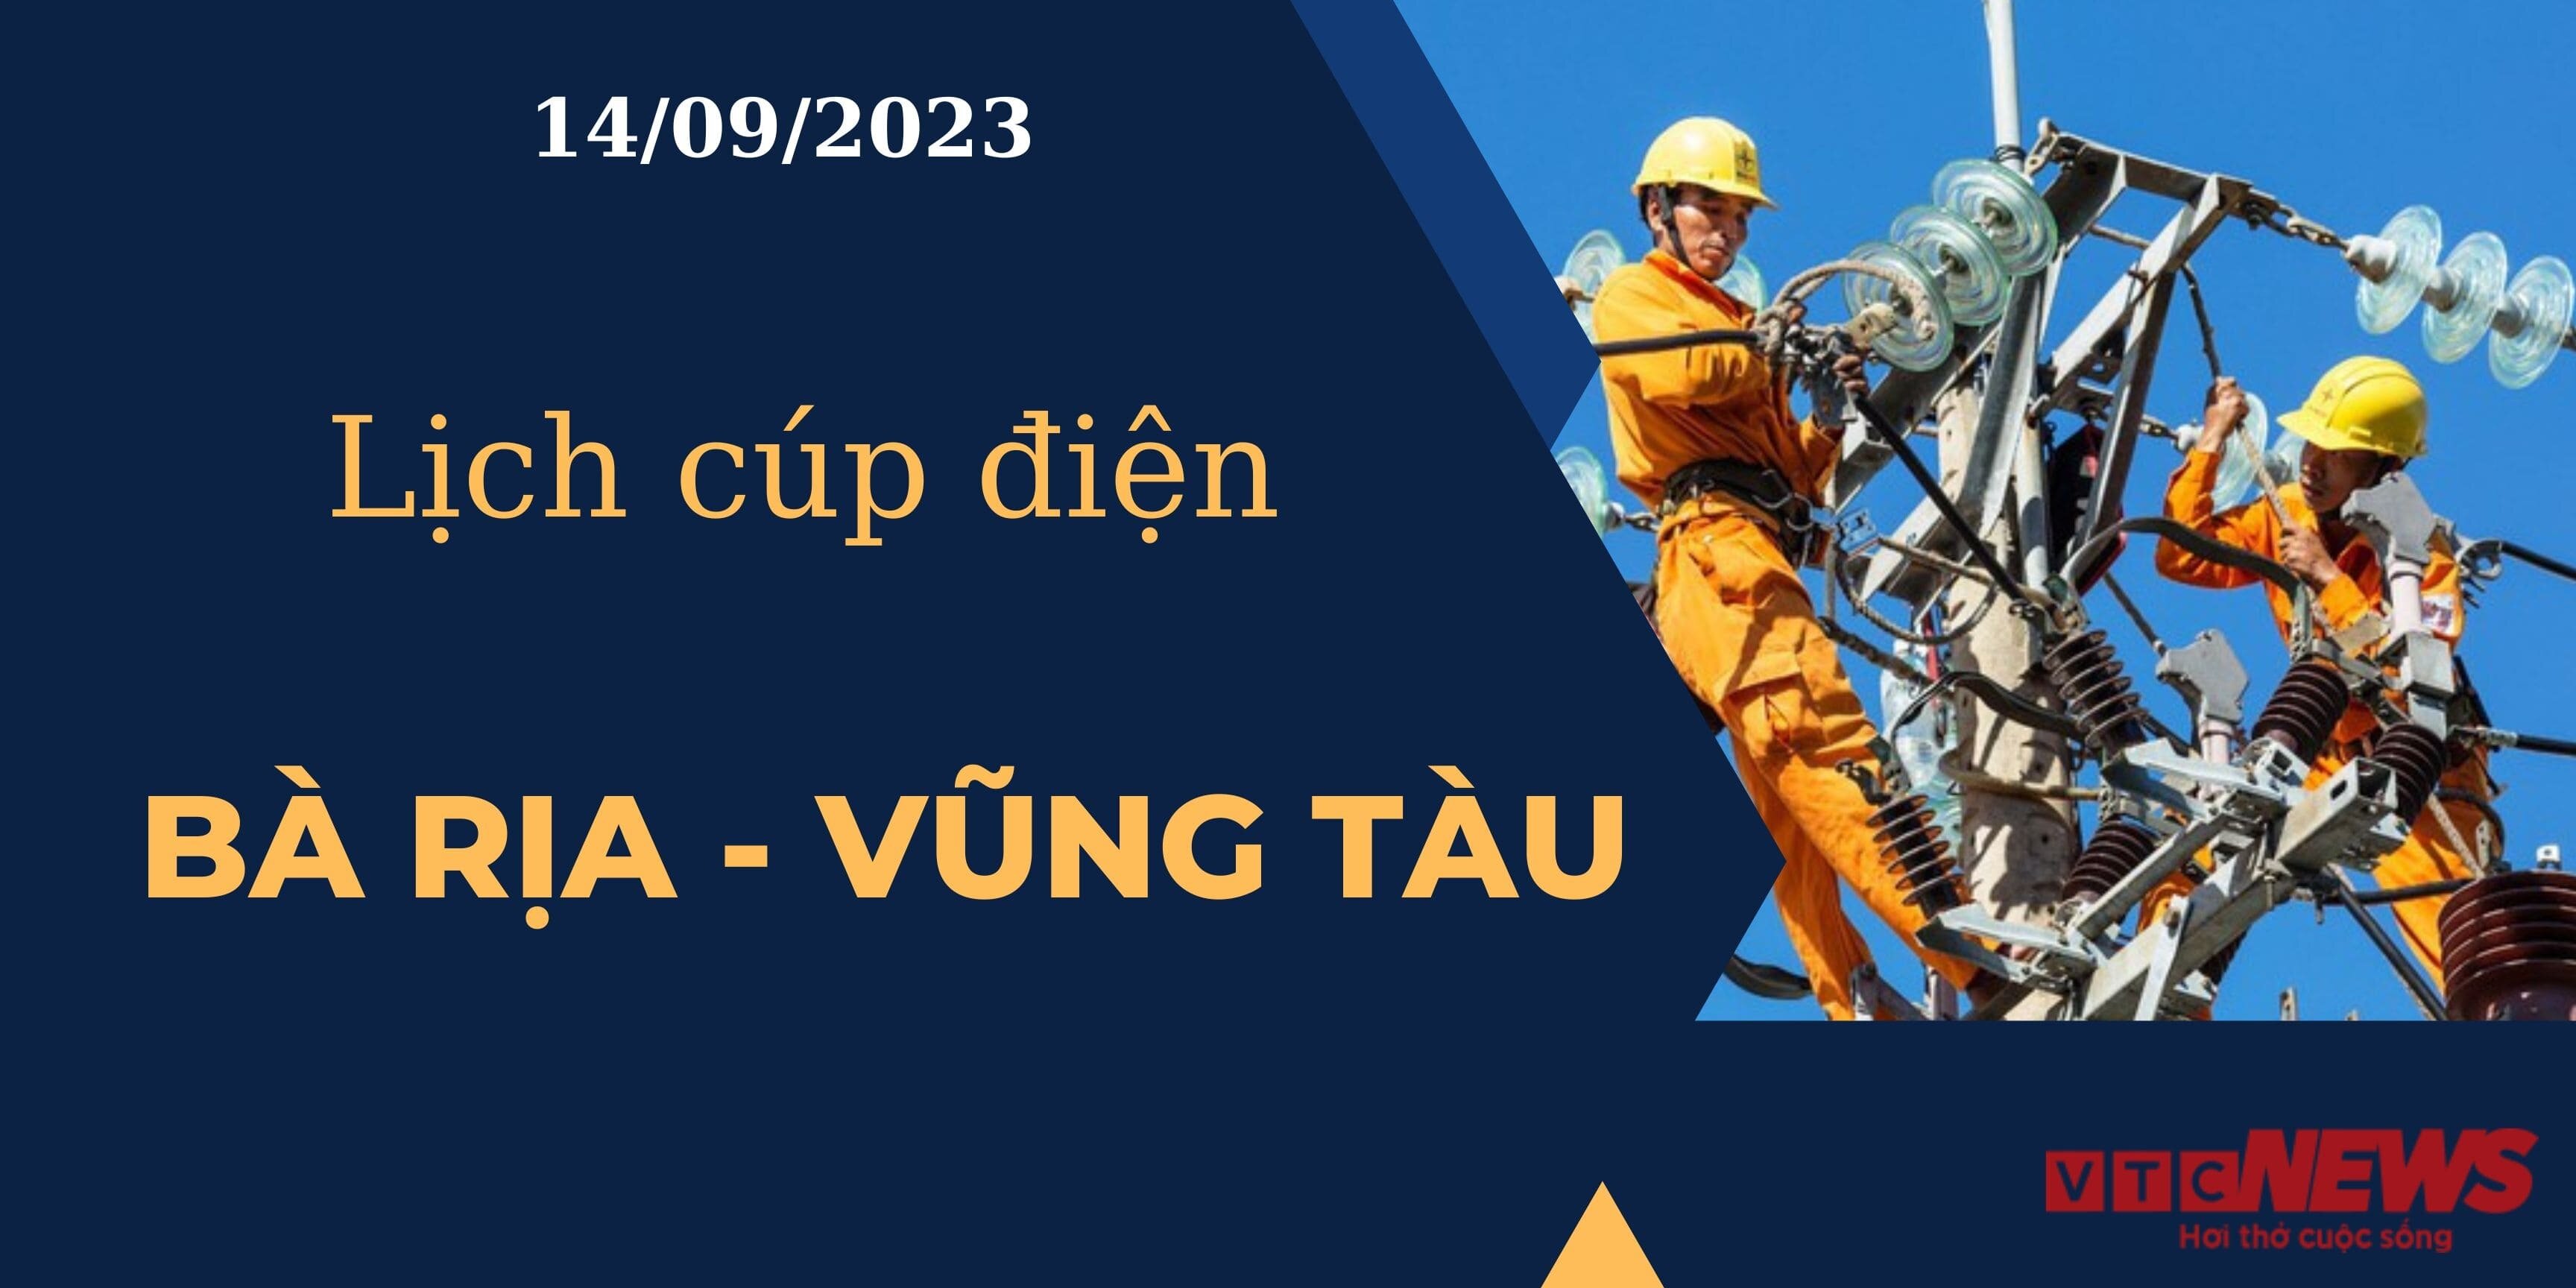 Lịch cúp điện hôm nay ngày 14/09/2023 tại Bà Rịa - Vũng Tàu